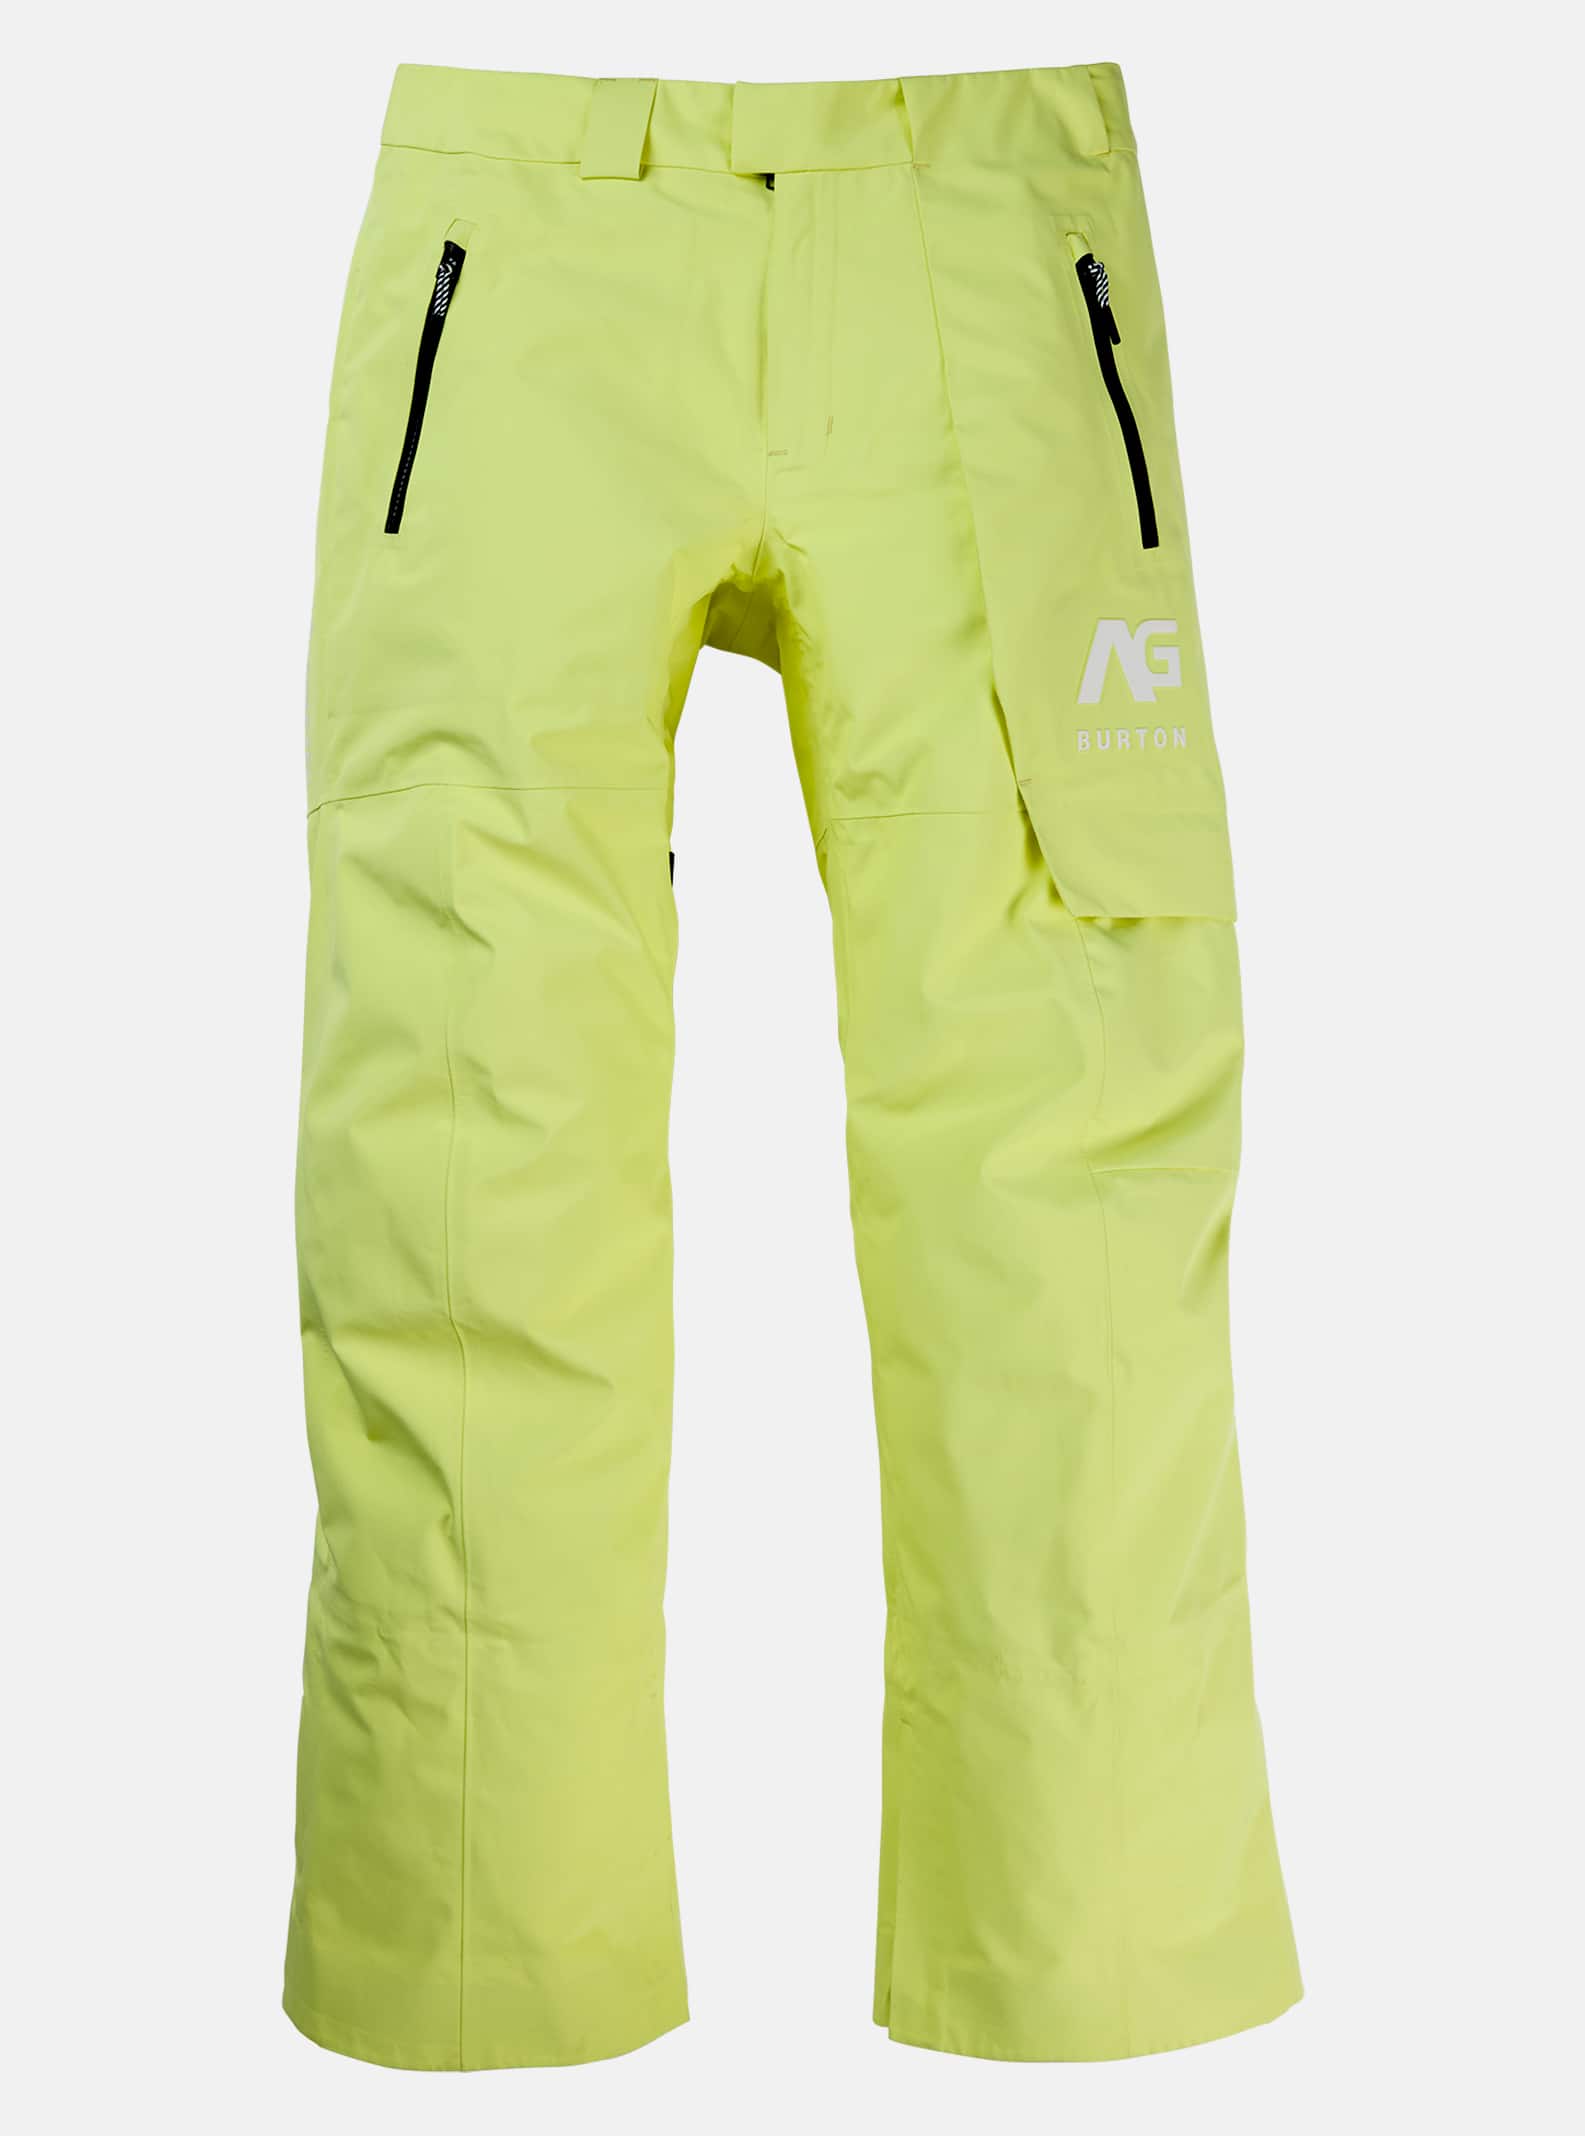 Pantalons et salopettes de snowboard pour homme de Burton | Matériaux de  qualité supérieure | Burton - Snowboards FR